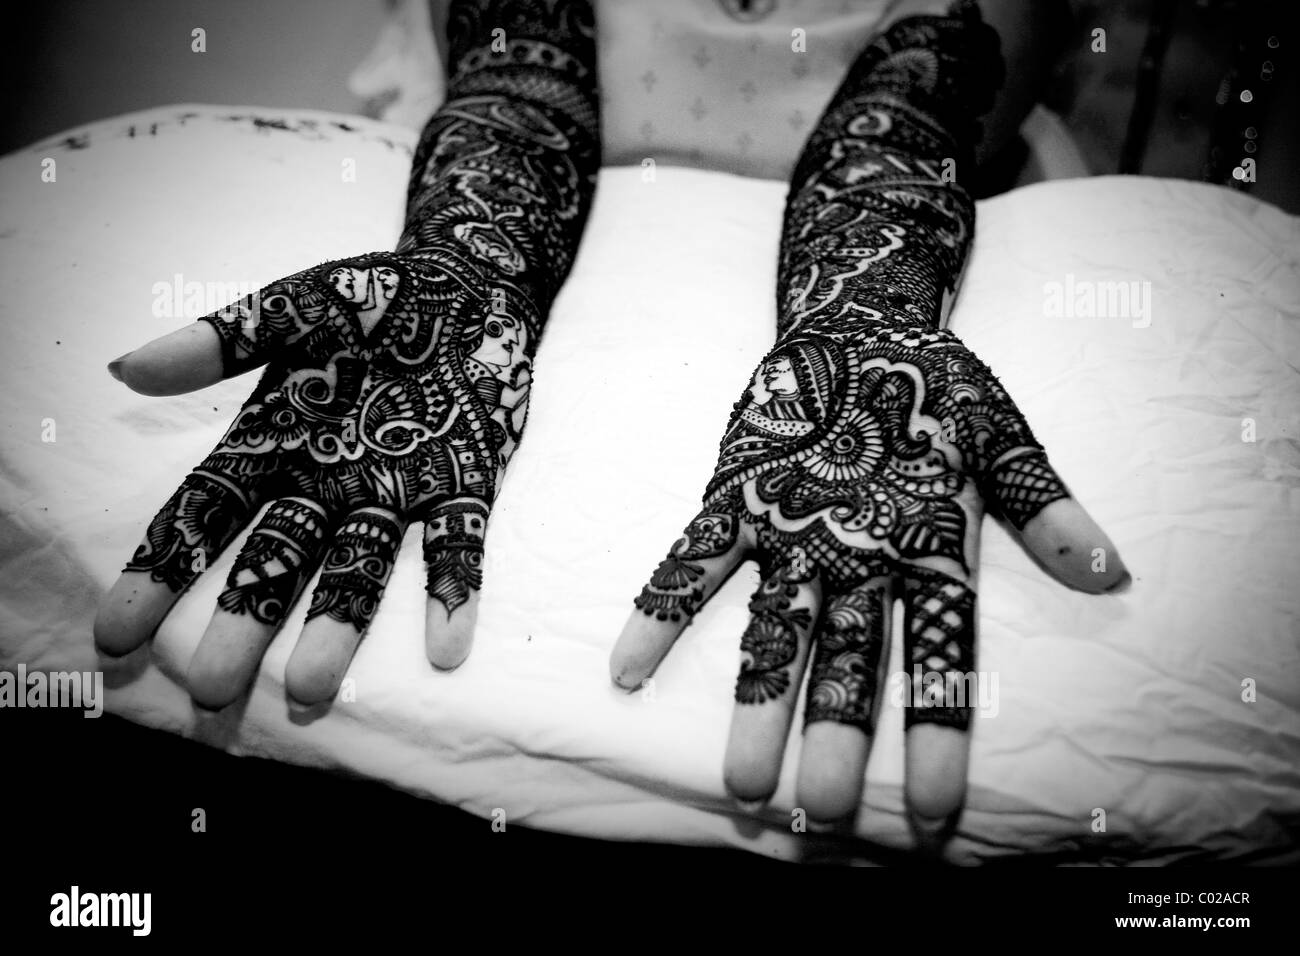 Et la mariée indienne avec la peinture traditionnelle de henné (alias mehndi) couvrant ses bras et les mains lors de son mariage à New Delhi en Inde. Banque D'Images